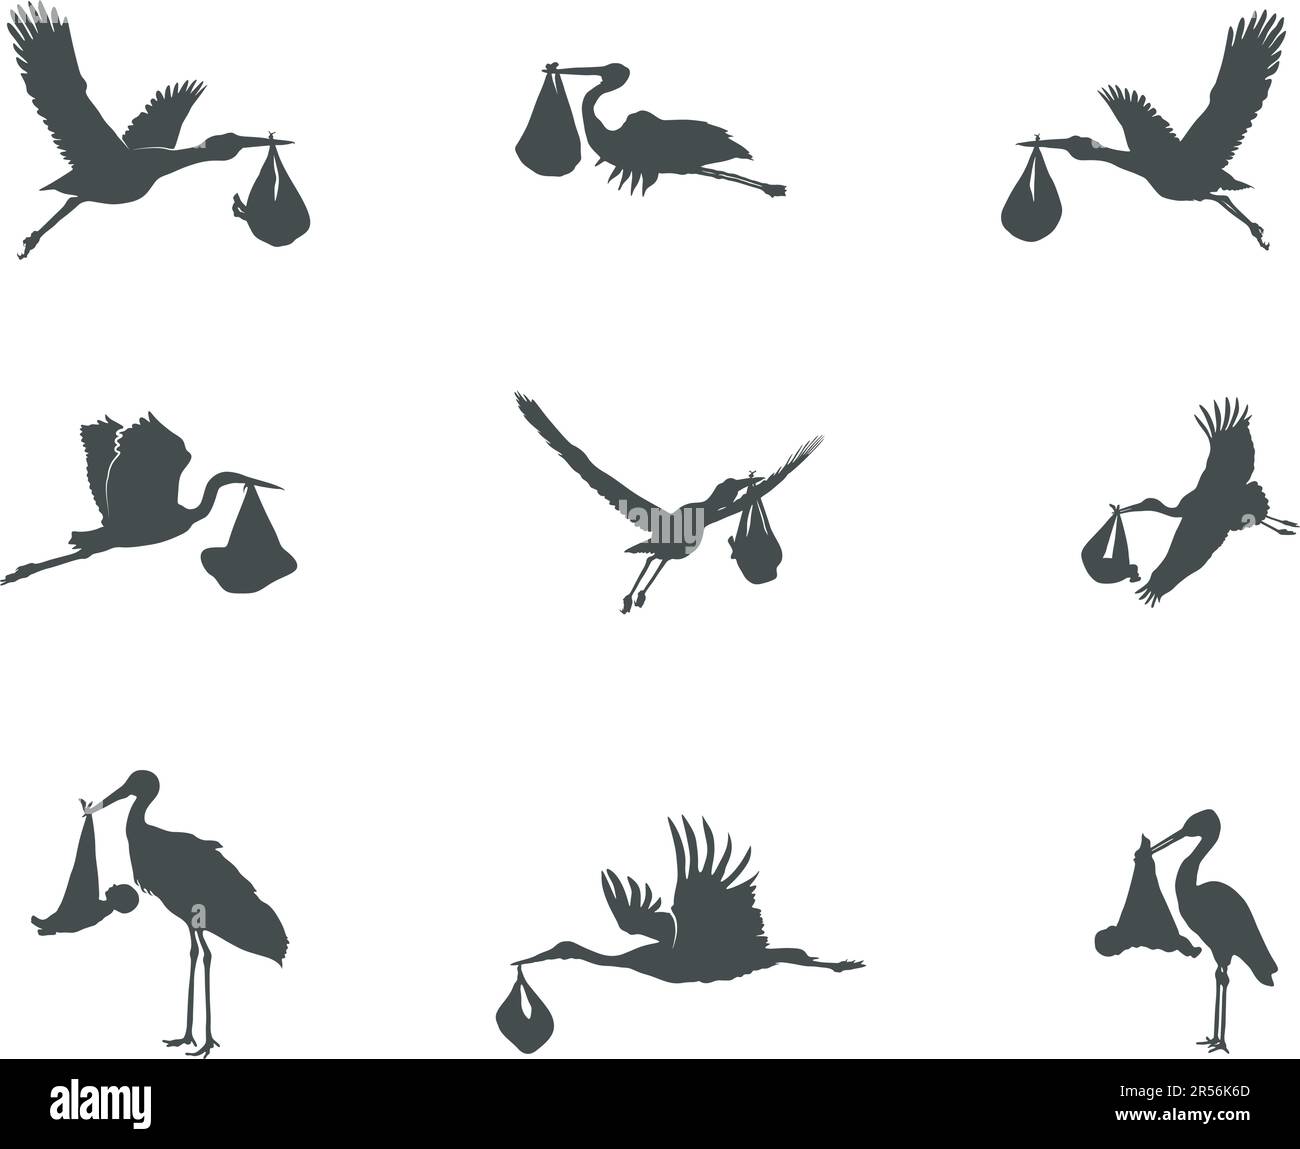 Stork carrying baby silhouette, Flying stork carrying baby silhouette, Stork baby delivery silhouette Stock Vector